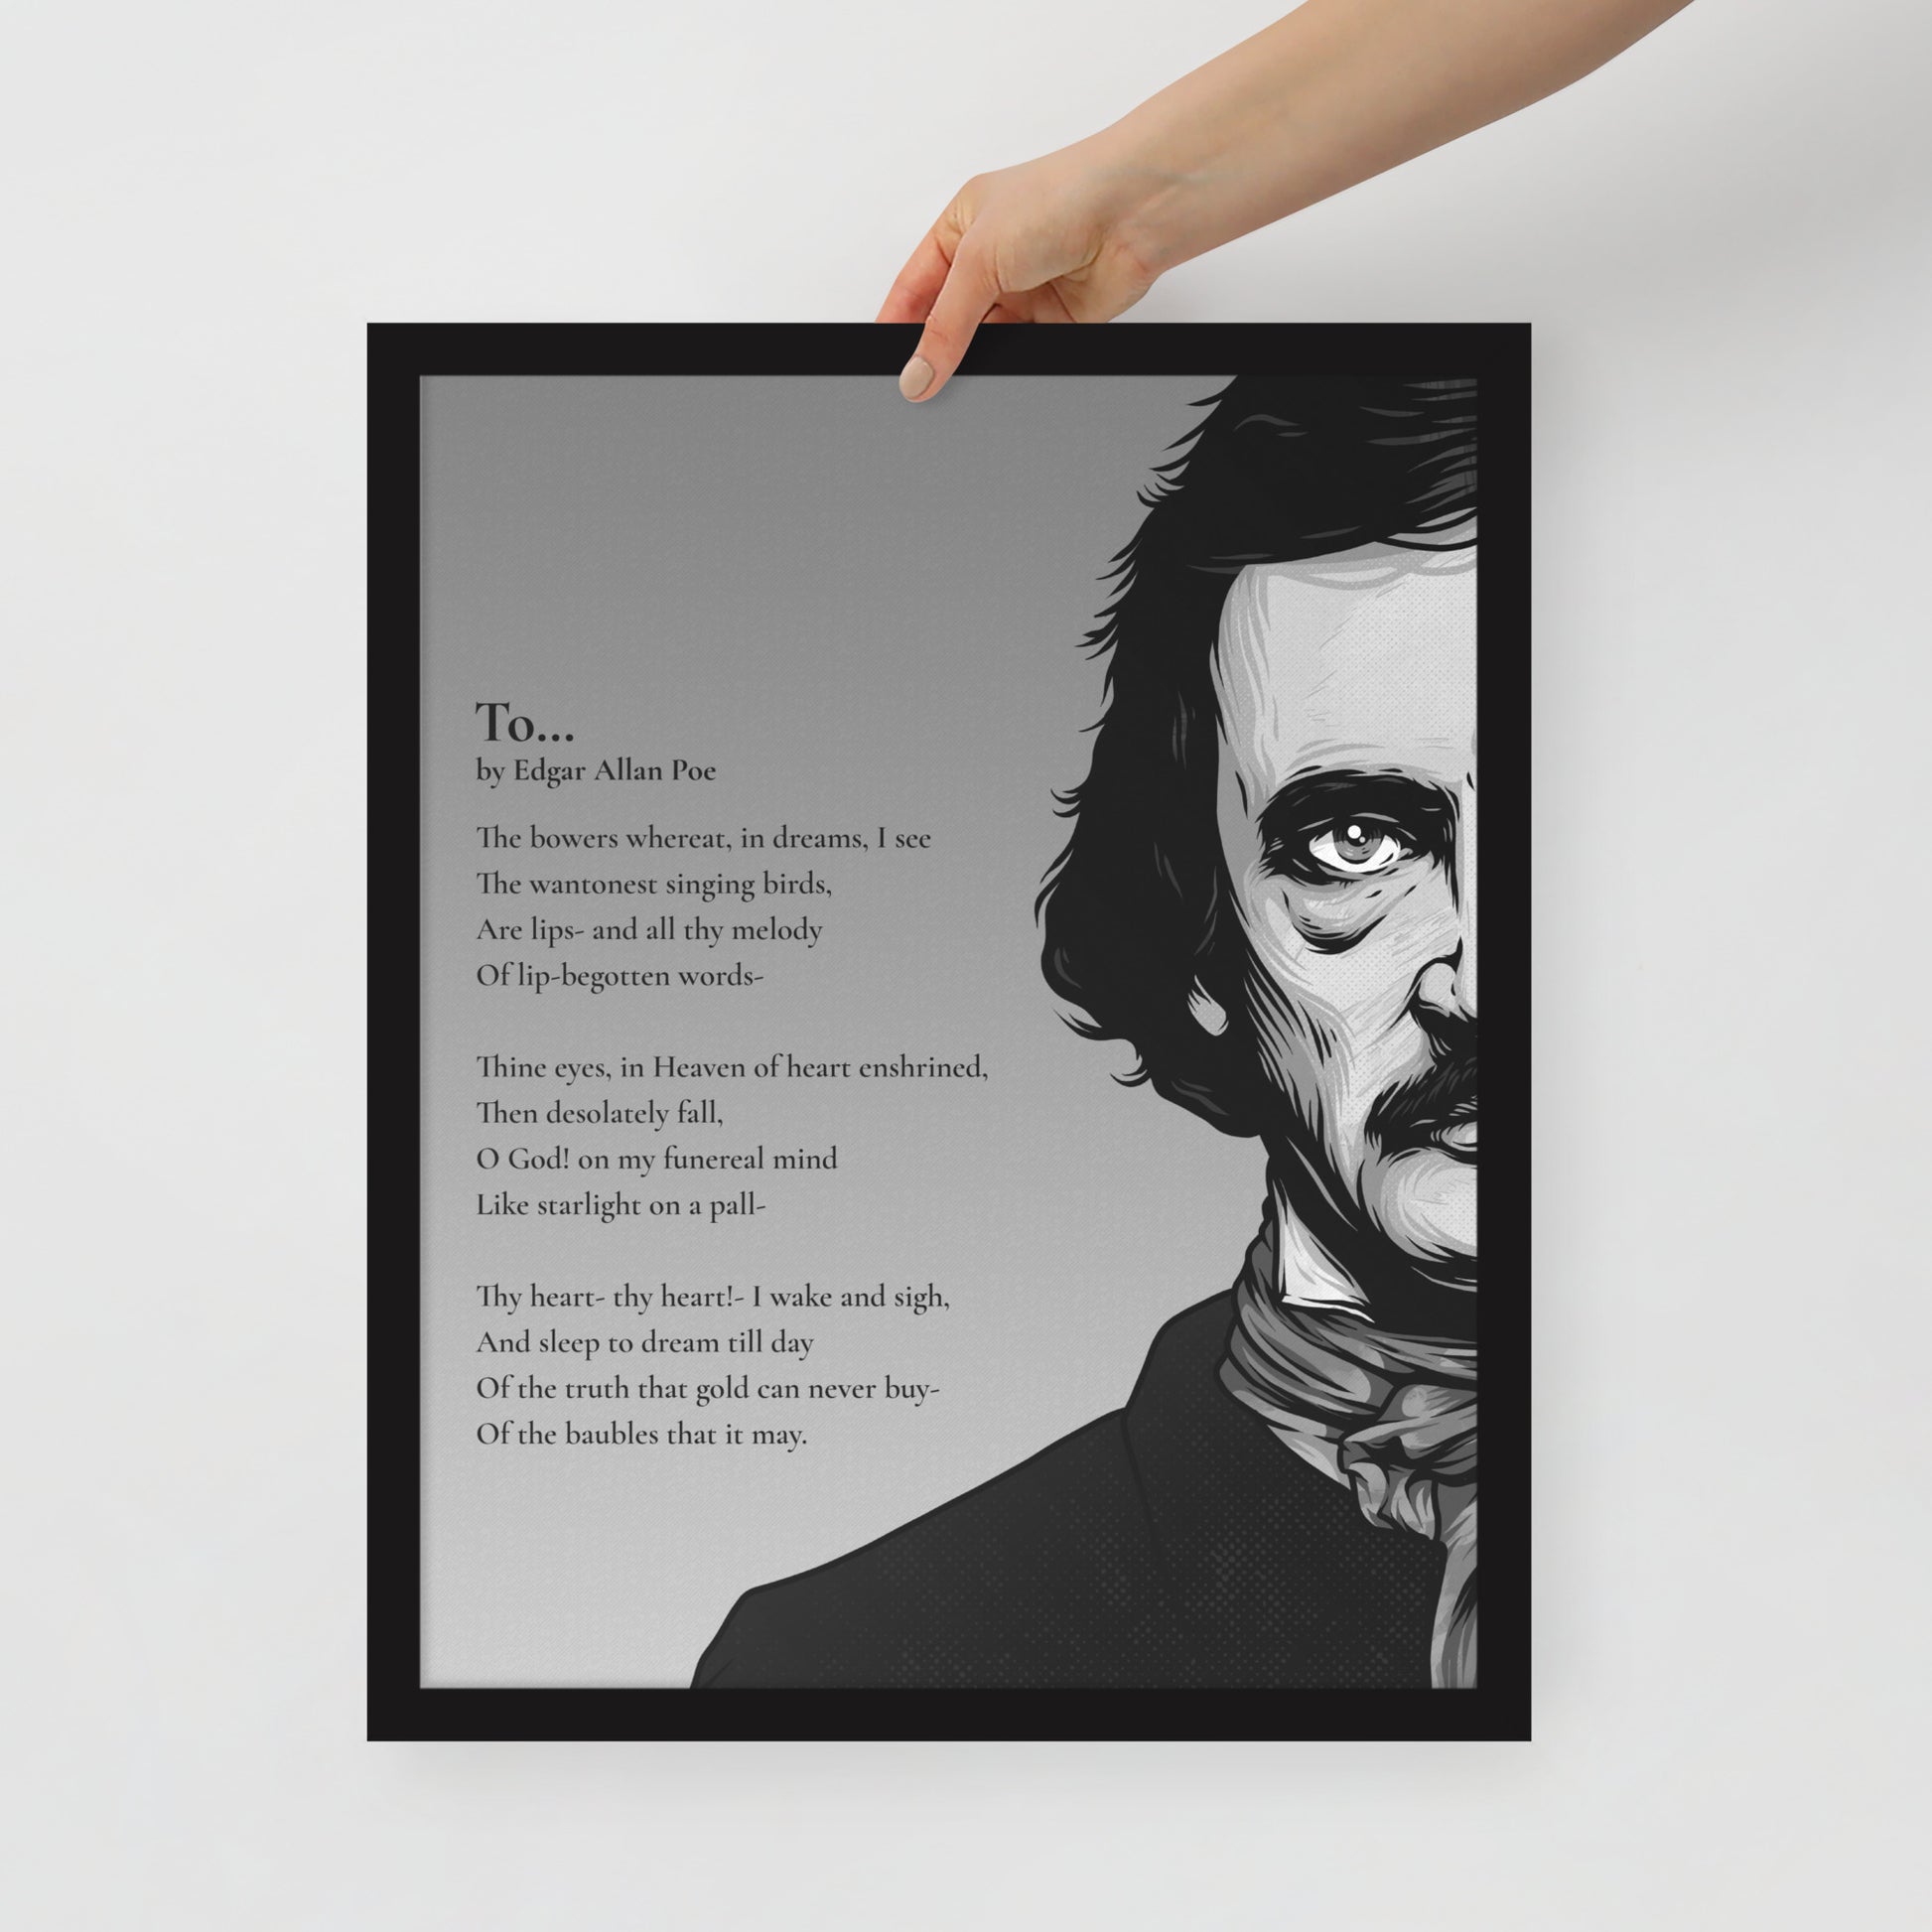 Edgar Allan Poe's 'To...' Framed Matted Poster - 16 x 20 Black Frame